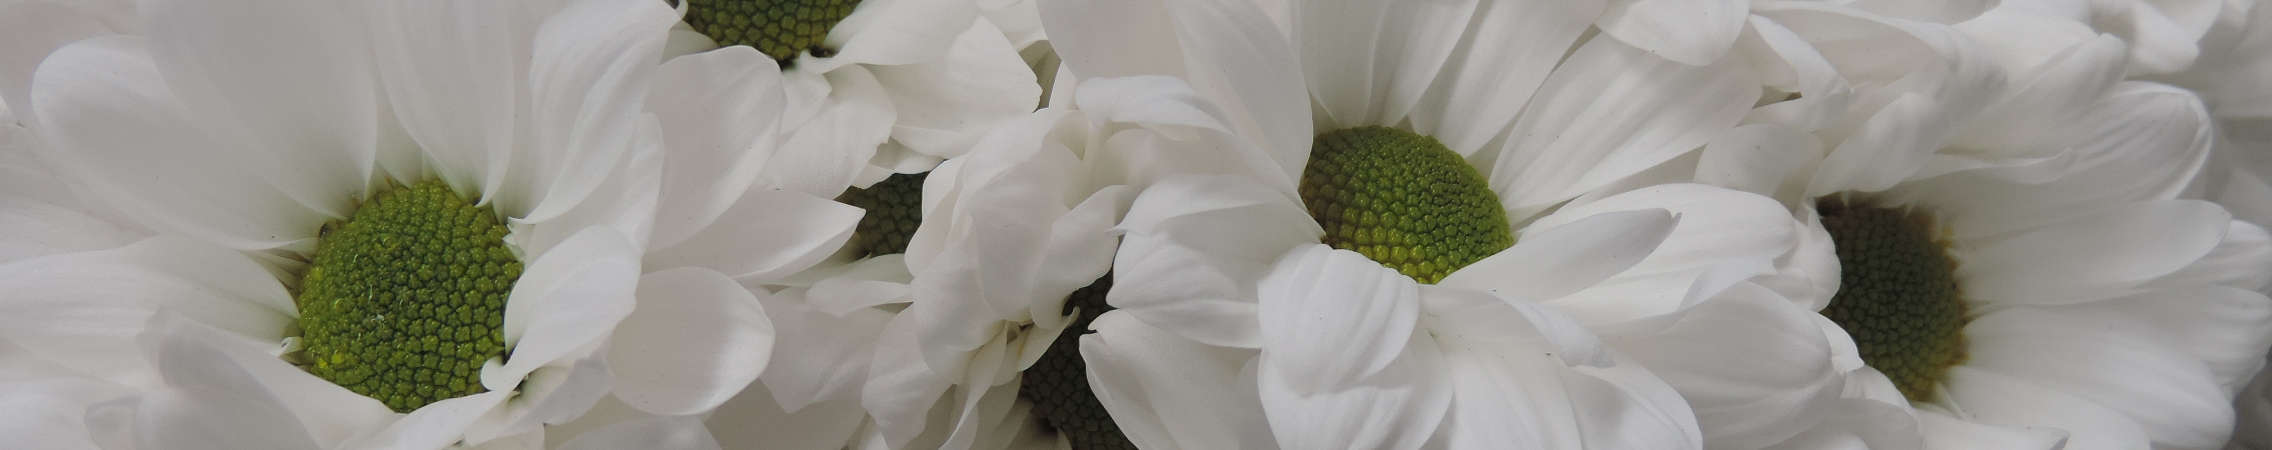 white daisy flowers in Uniflor's farm